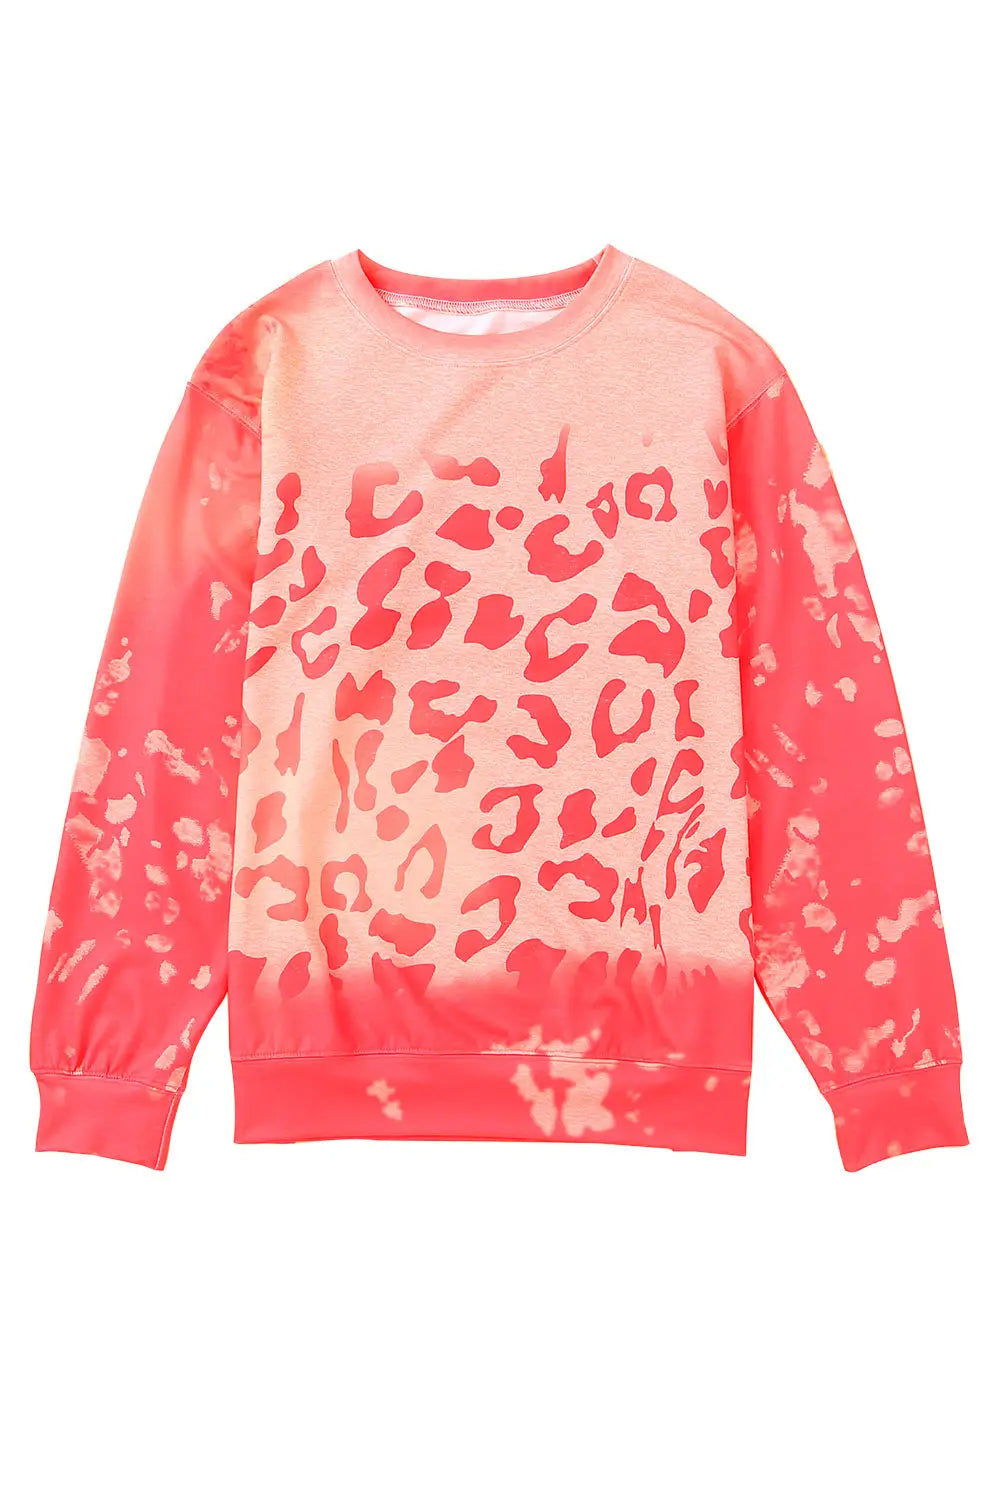 Pink bleached cheetah print sweatshirt - sweatshirts & hoodies